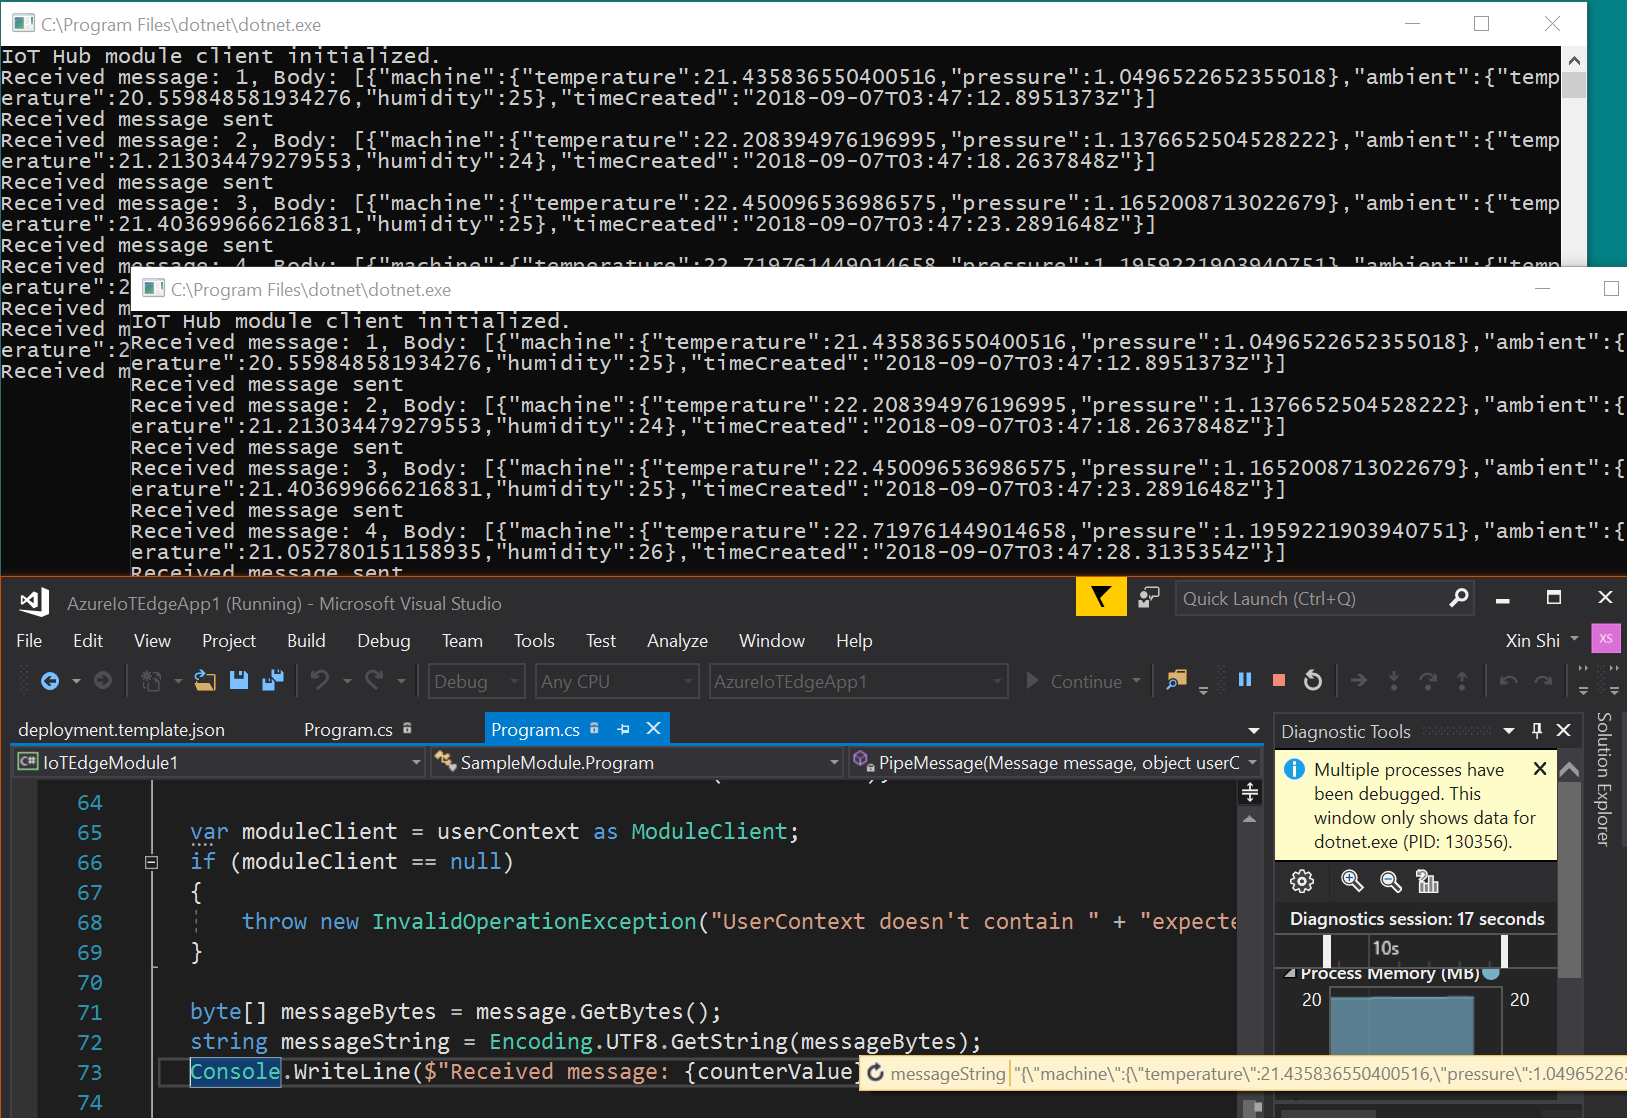 Schermopname van Visual Studio met twee uitvoerconsoles.